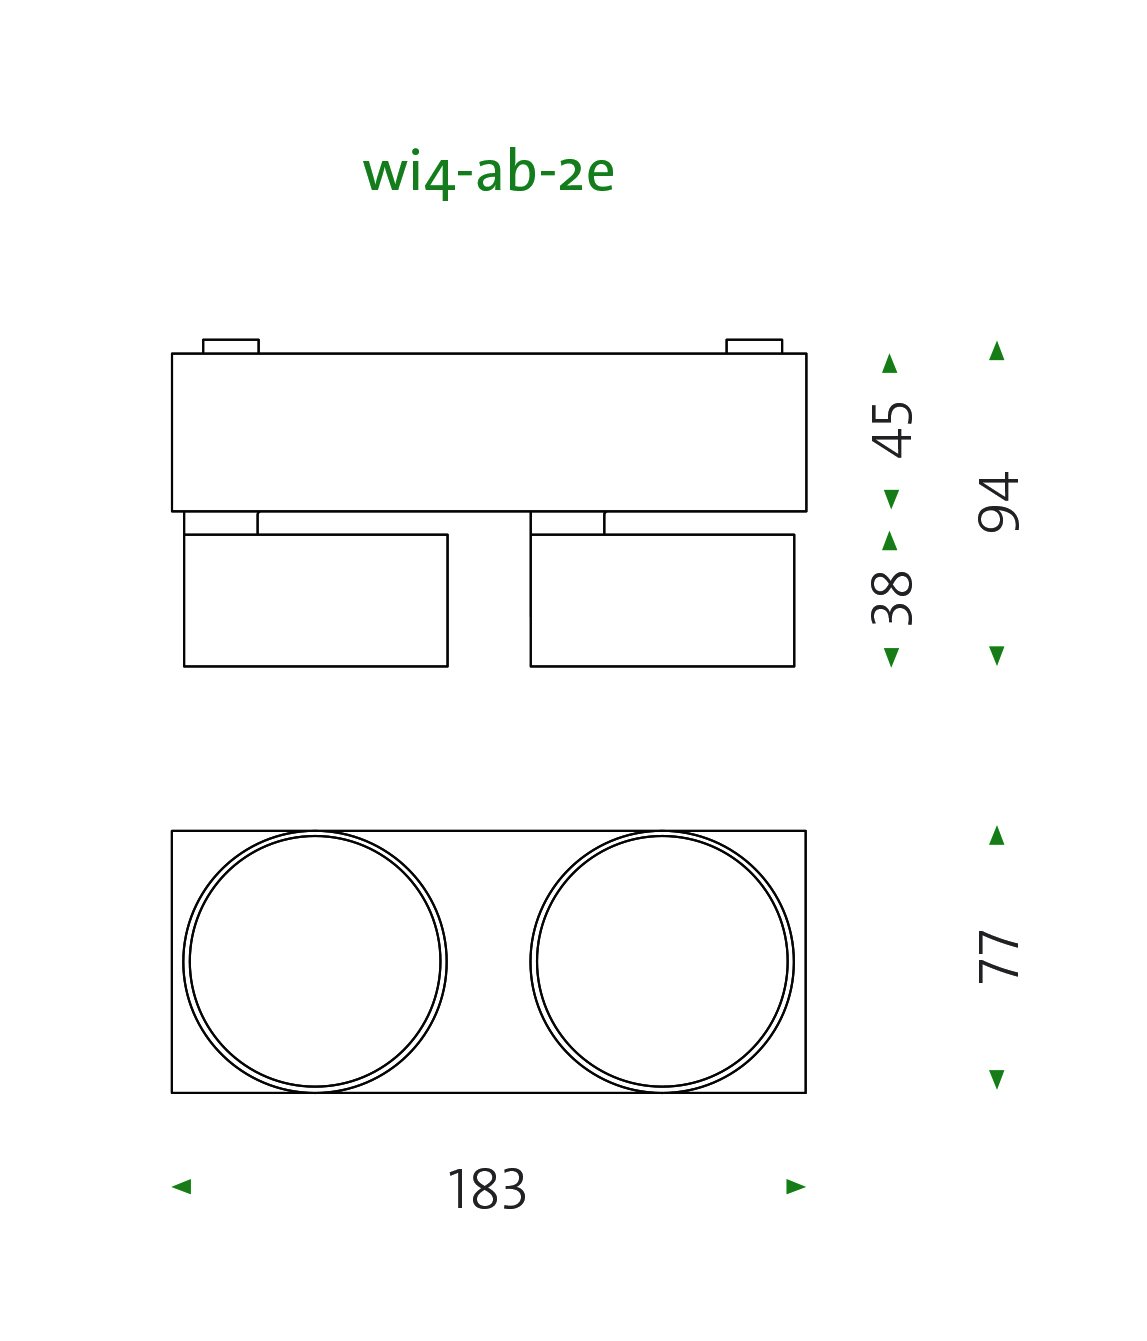 mawa design wittenberg 4 0 wi4 ab 2e aufbaustrahler technische zeichnung